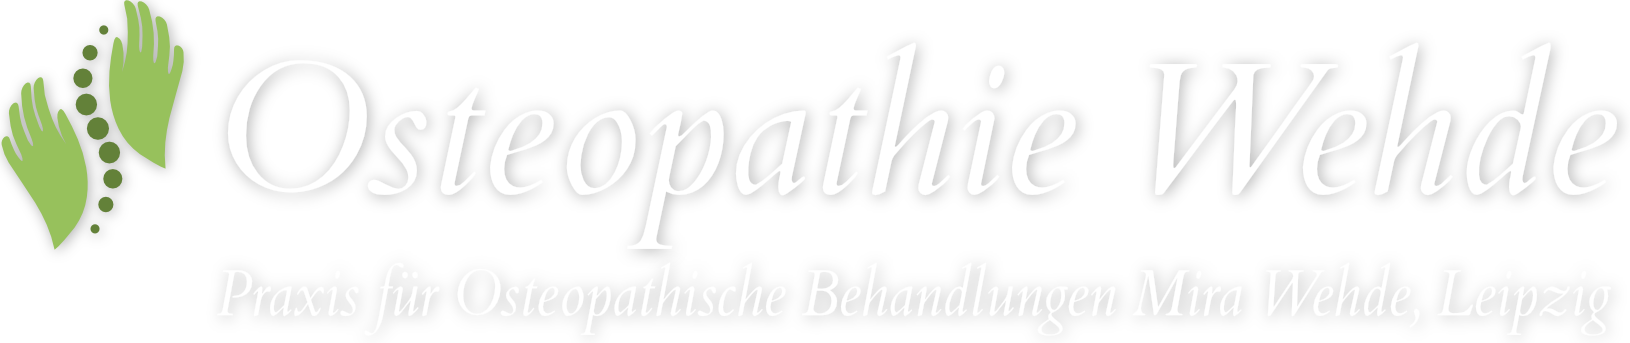 Praxis für Osteopathische Behandlungen Mira Wehde, Leipzig